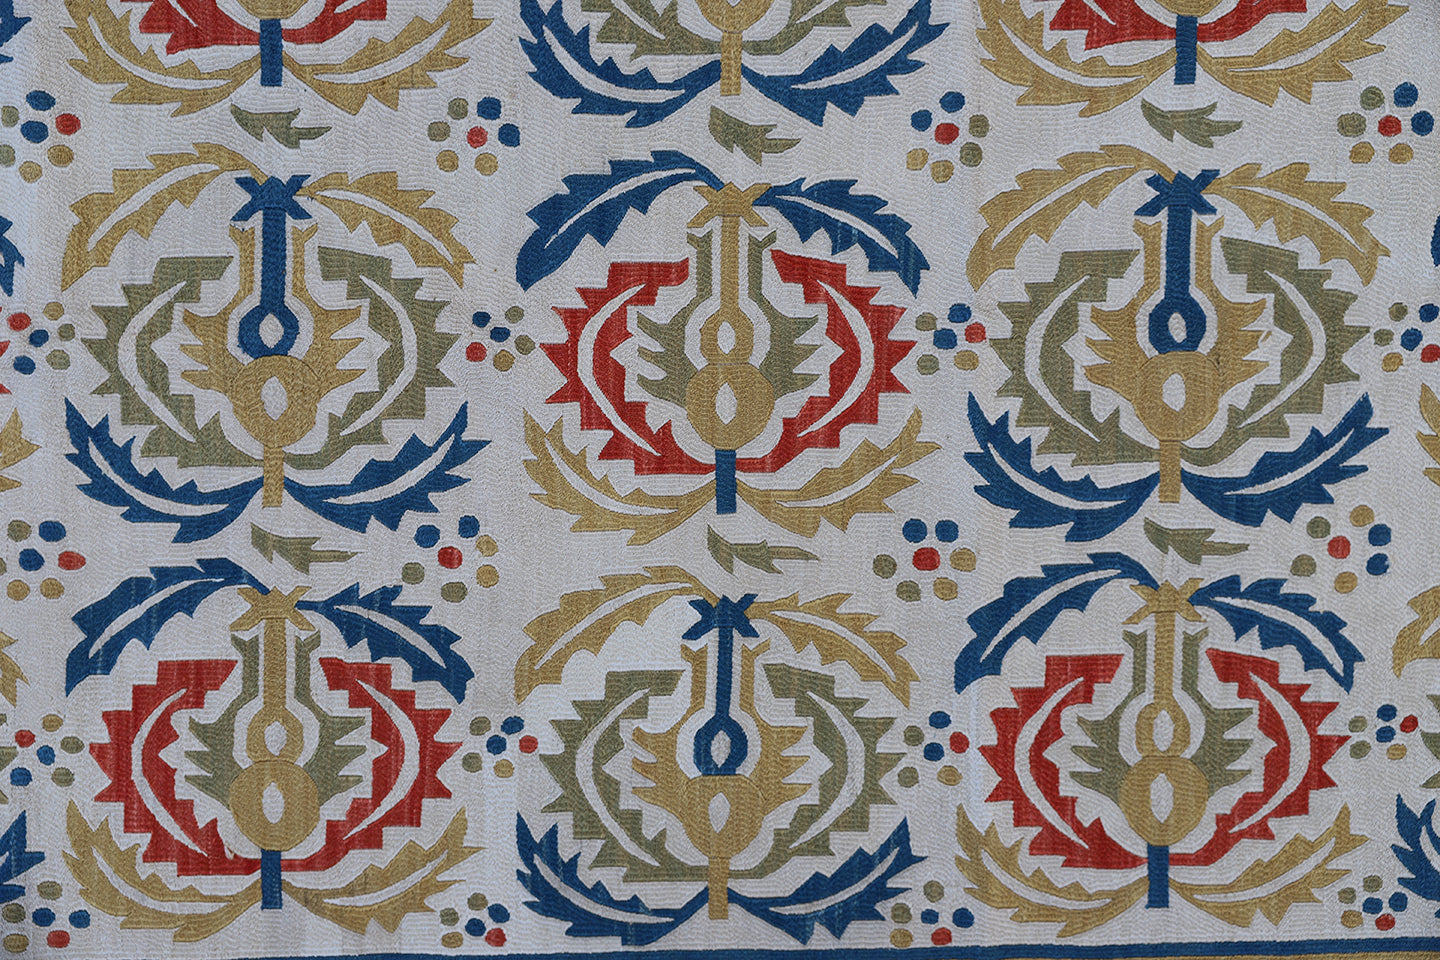 3'x5' Hand Stitched Uzbek Suzani Textile